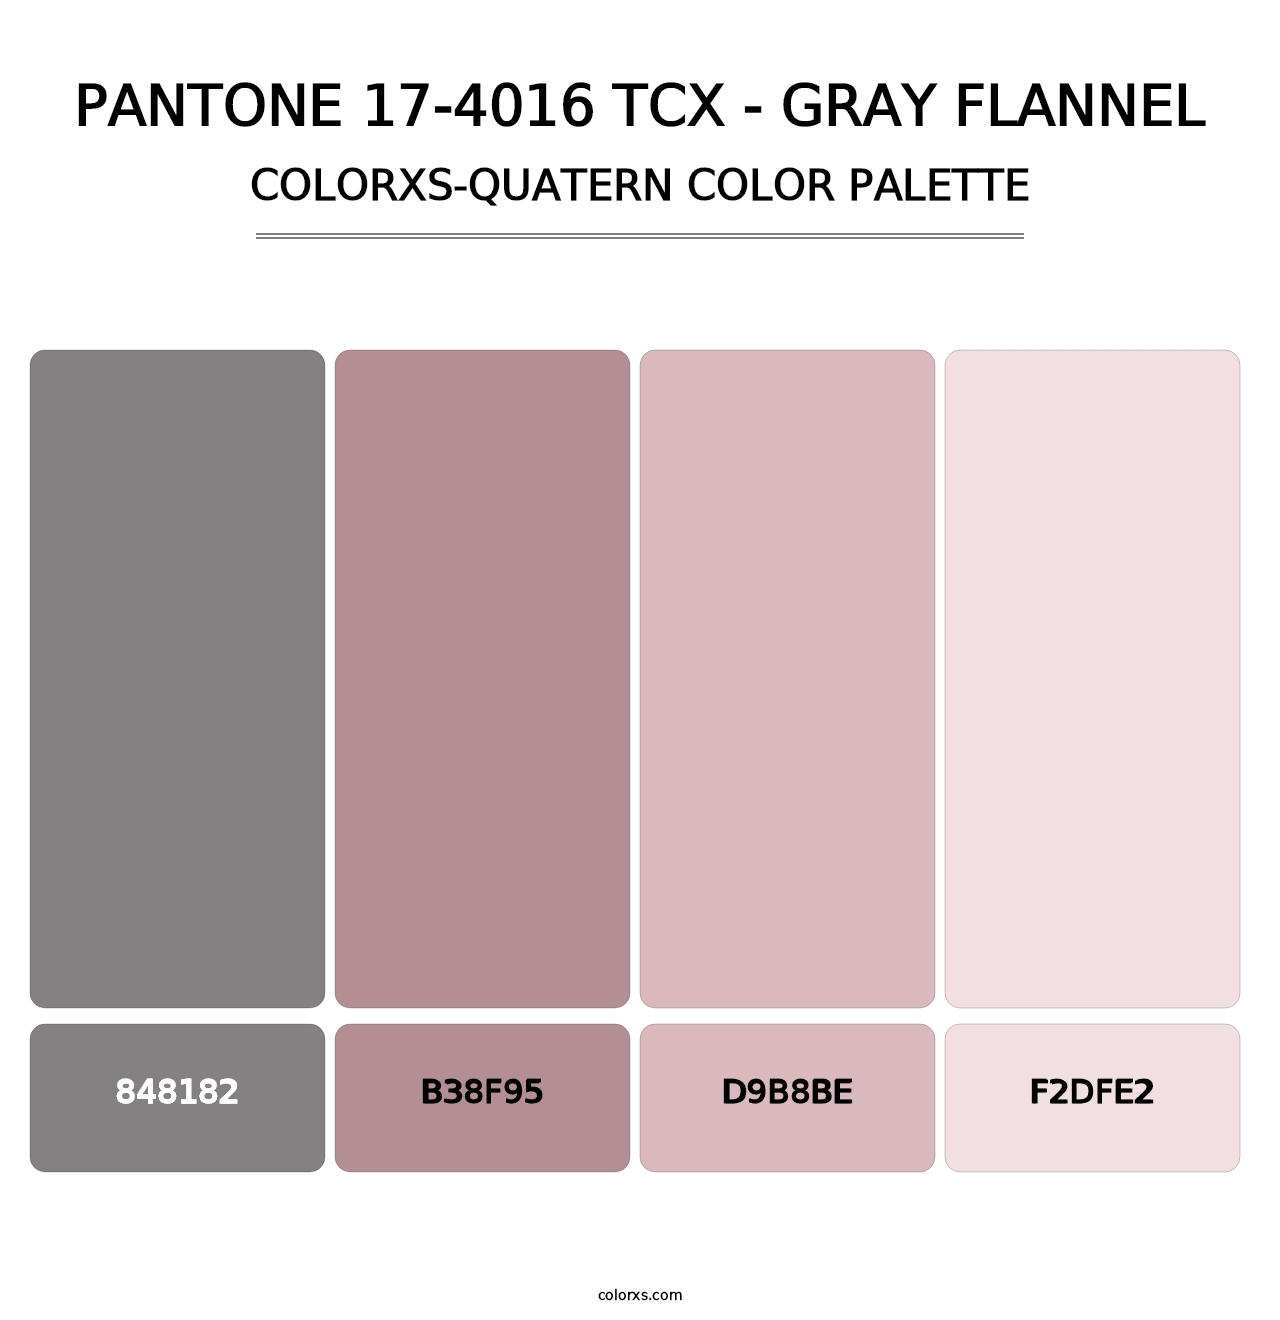 PANTONE 17-4016 TCX - Gray Flannel - Colorxs Quatern Palette